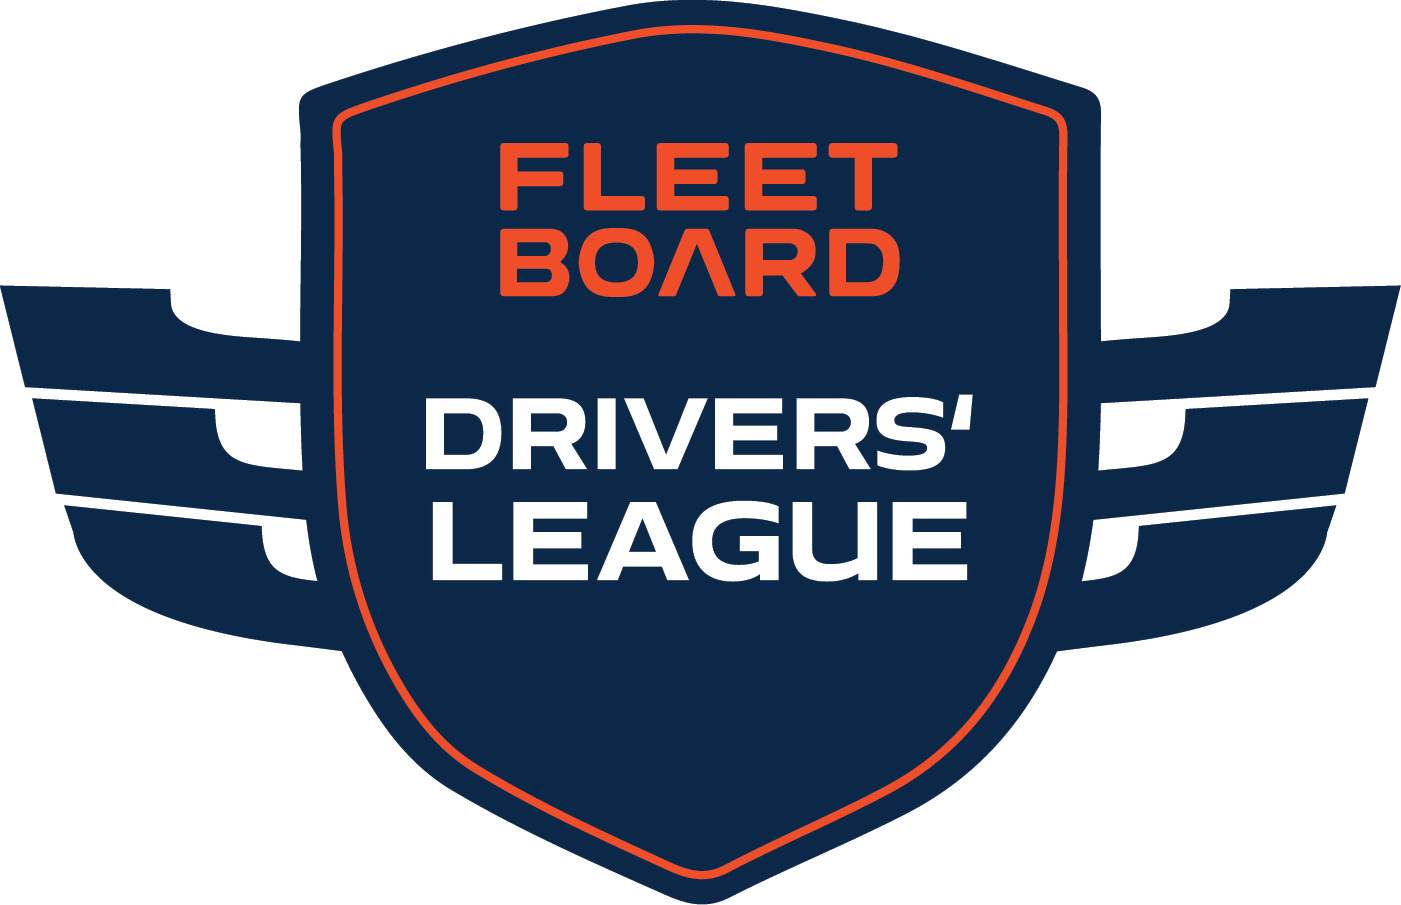 Fleetboard kürt beste Lkw-Fahrer, Flotten und WM-Teams